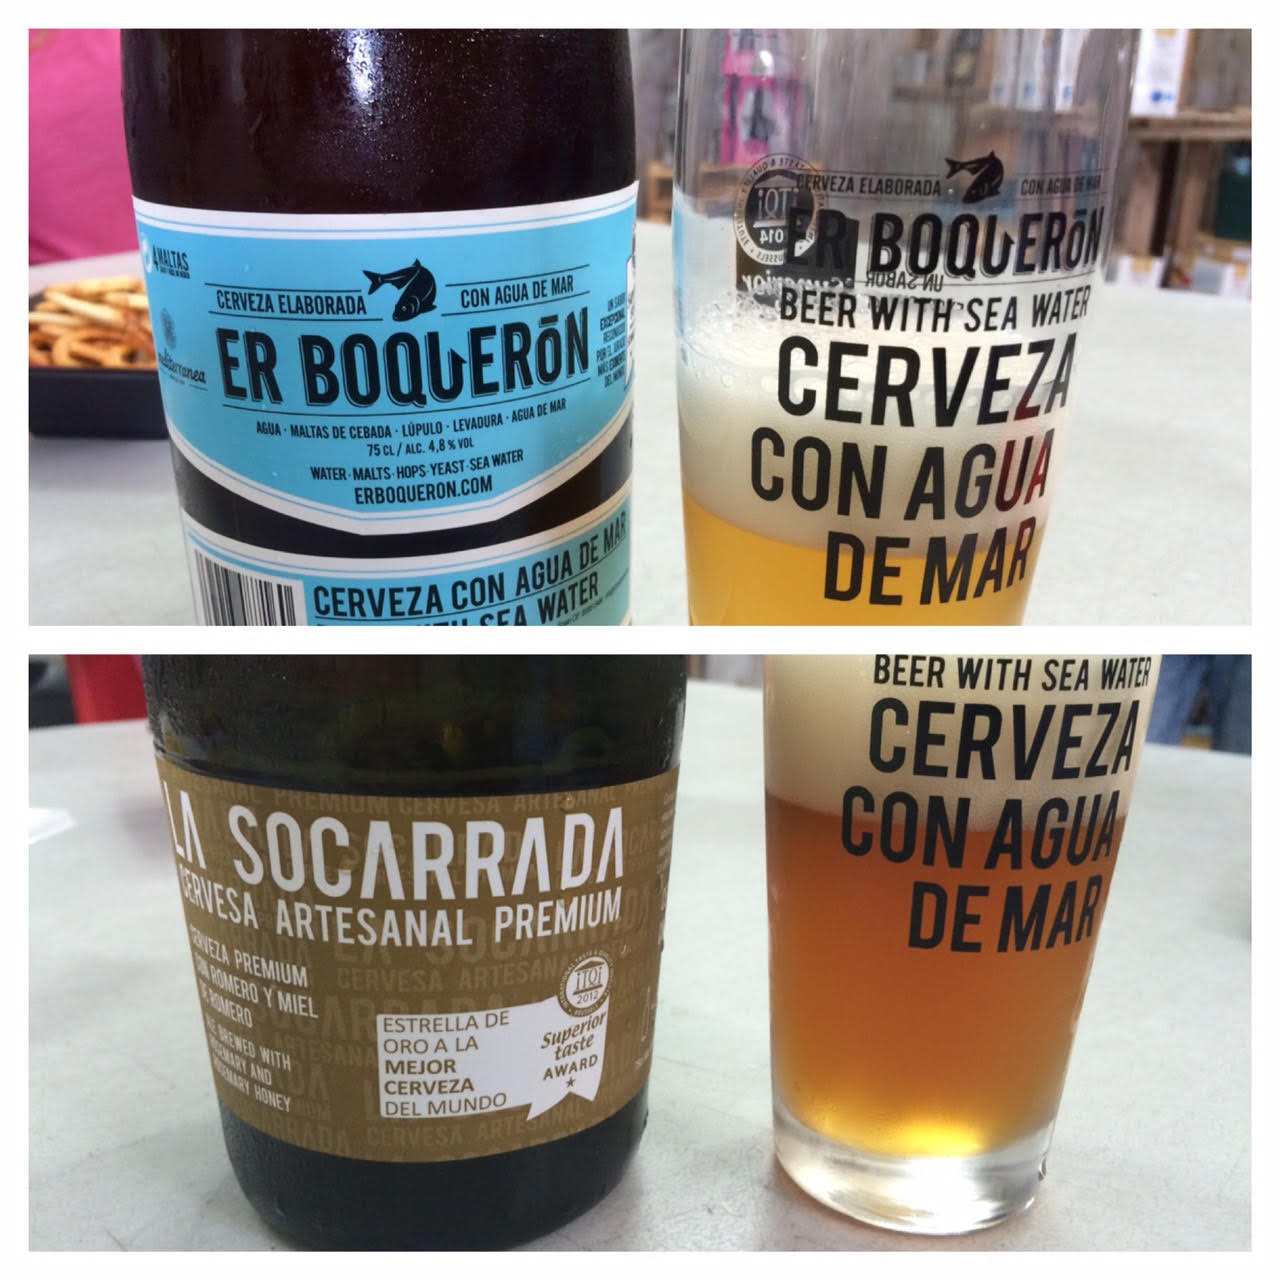 Visita a la fábrica de cerveza artesanal La Socarrada (Xátiva)